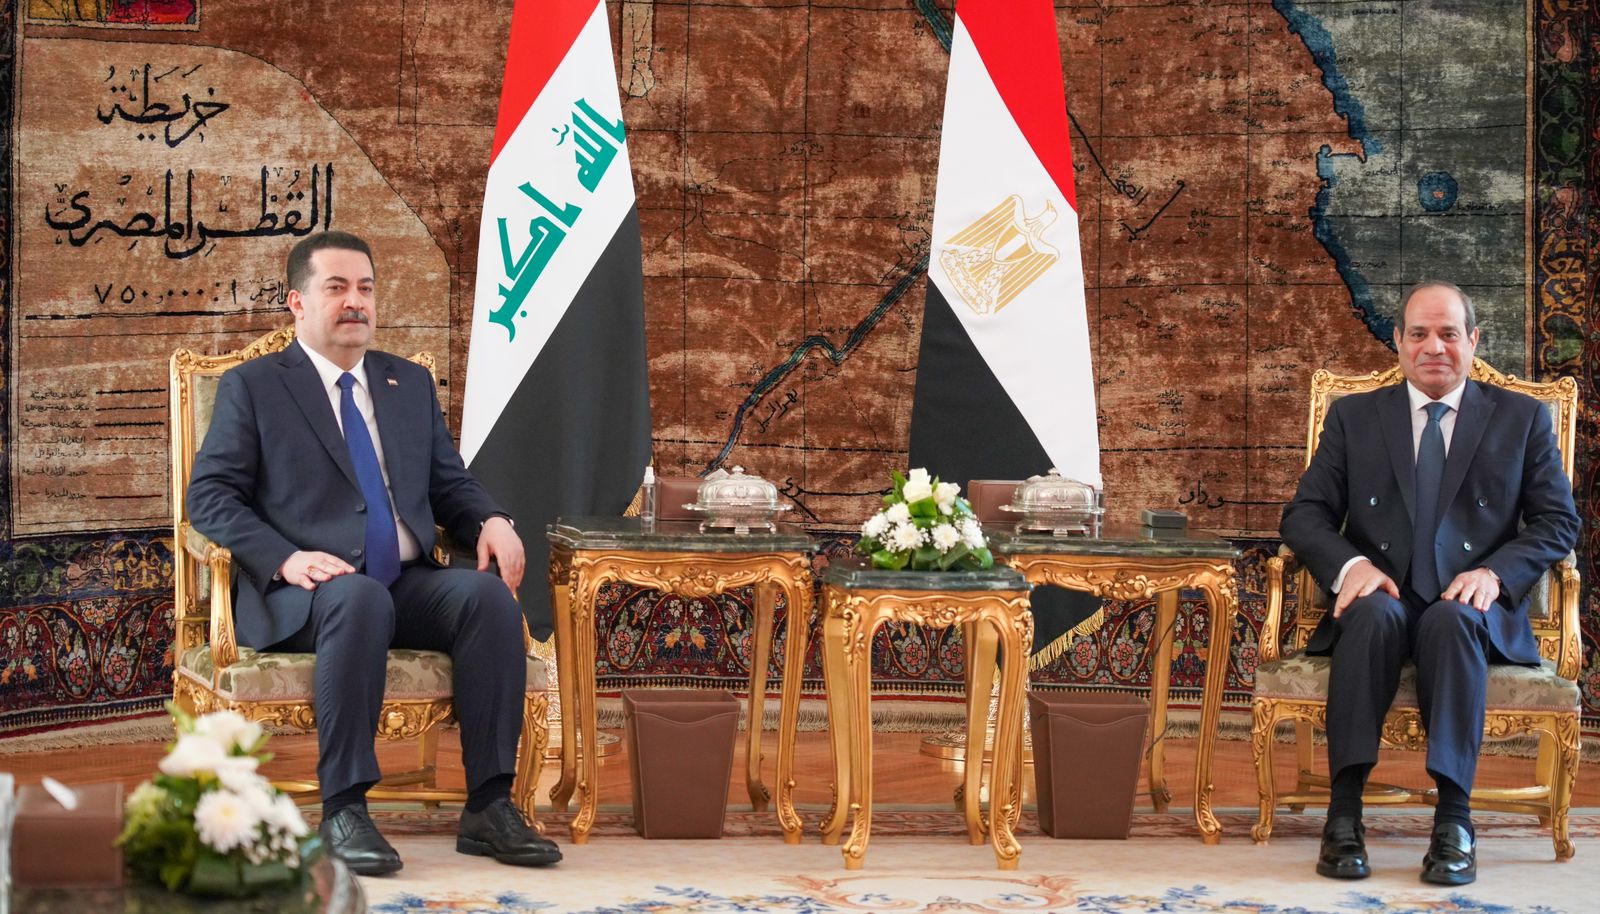 Al-Sudani and El-Sisi discuss enhancing bilateral relations